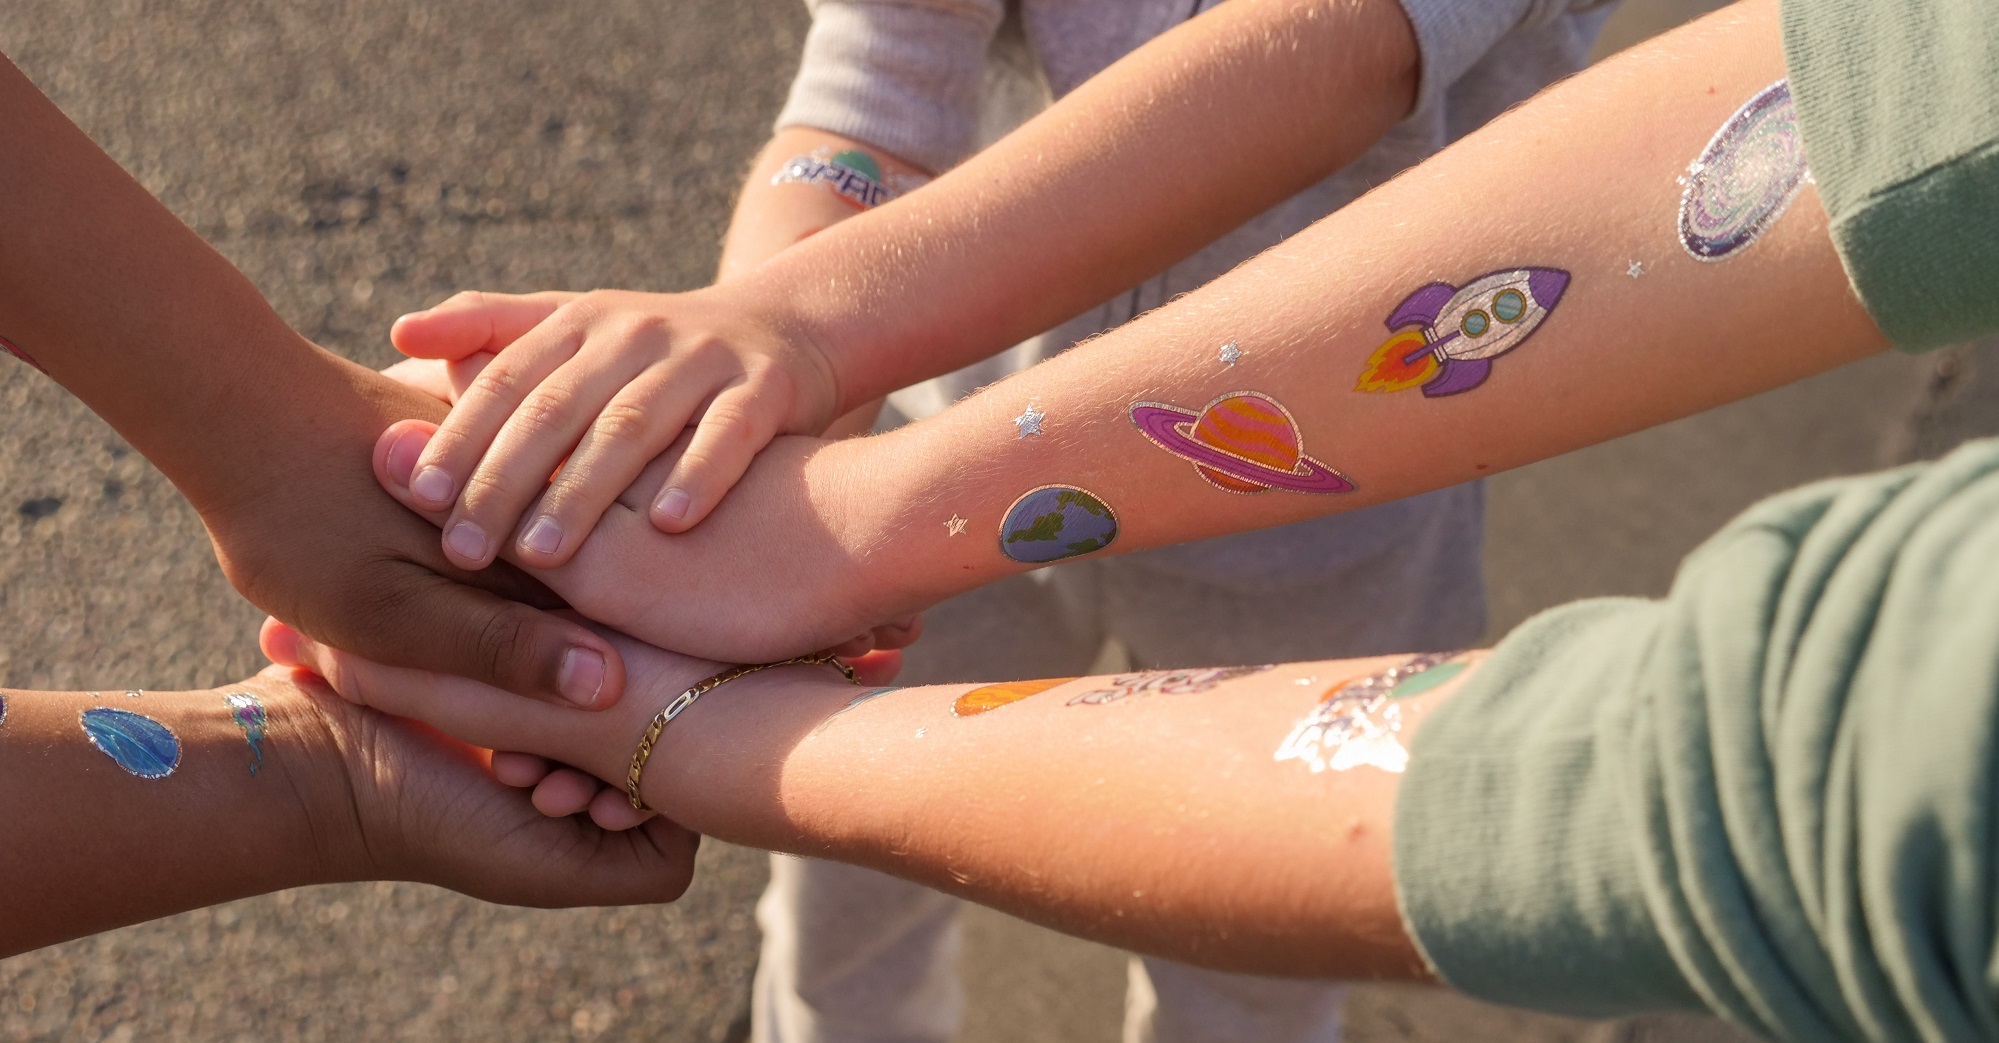 Junge Menschen legen die Hände aufeinander und halten zusammen. Auf den Armen sind bunte Tattoos von Planeten aufgeklebt.